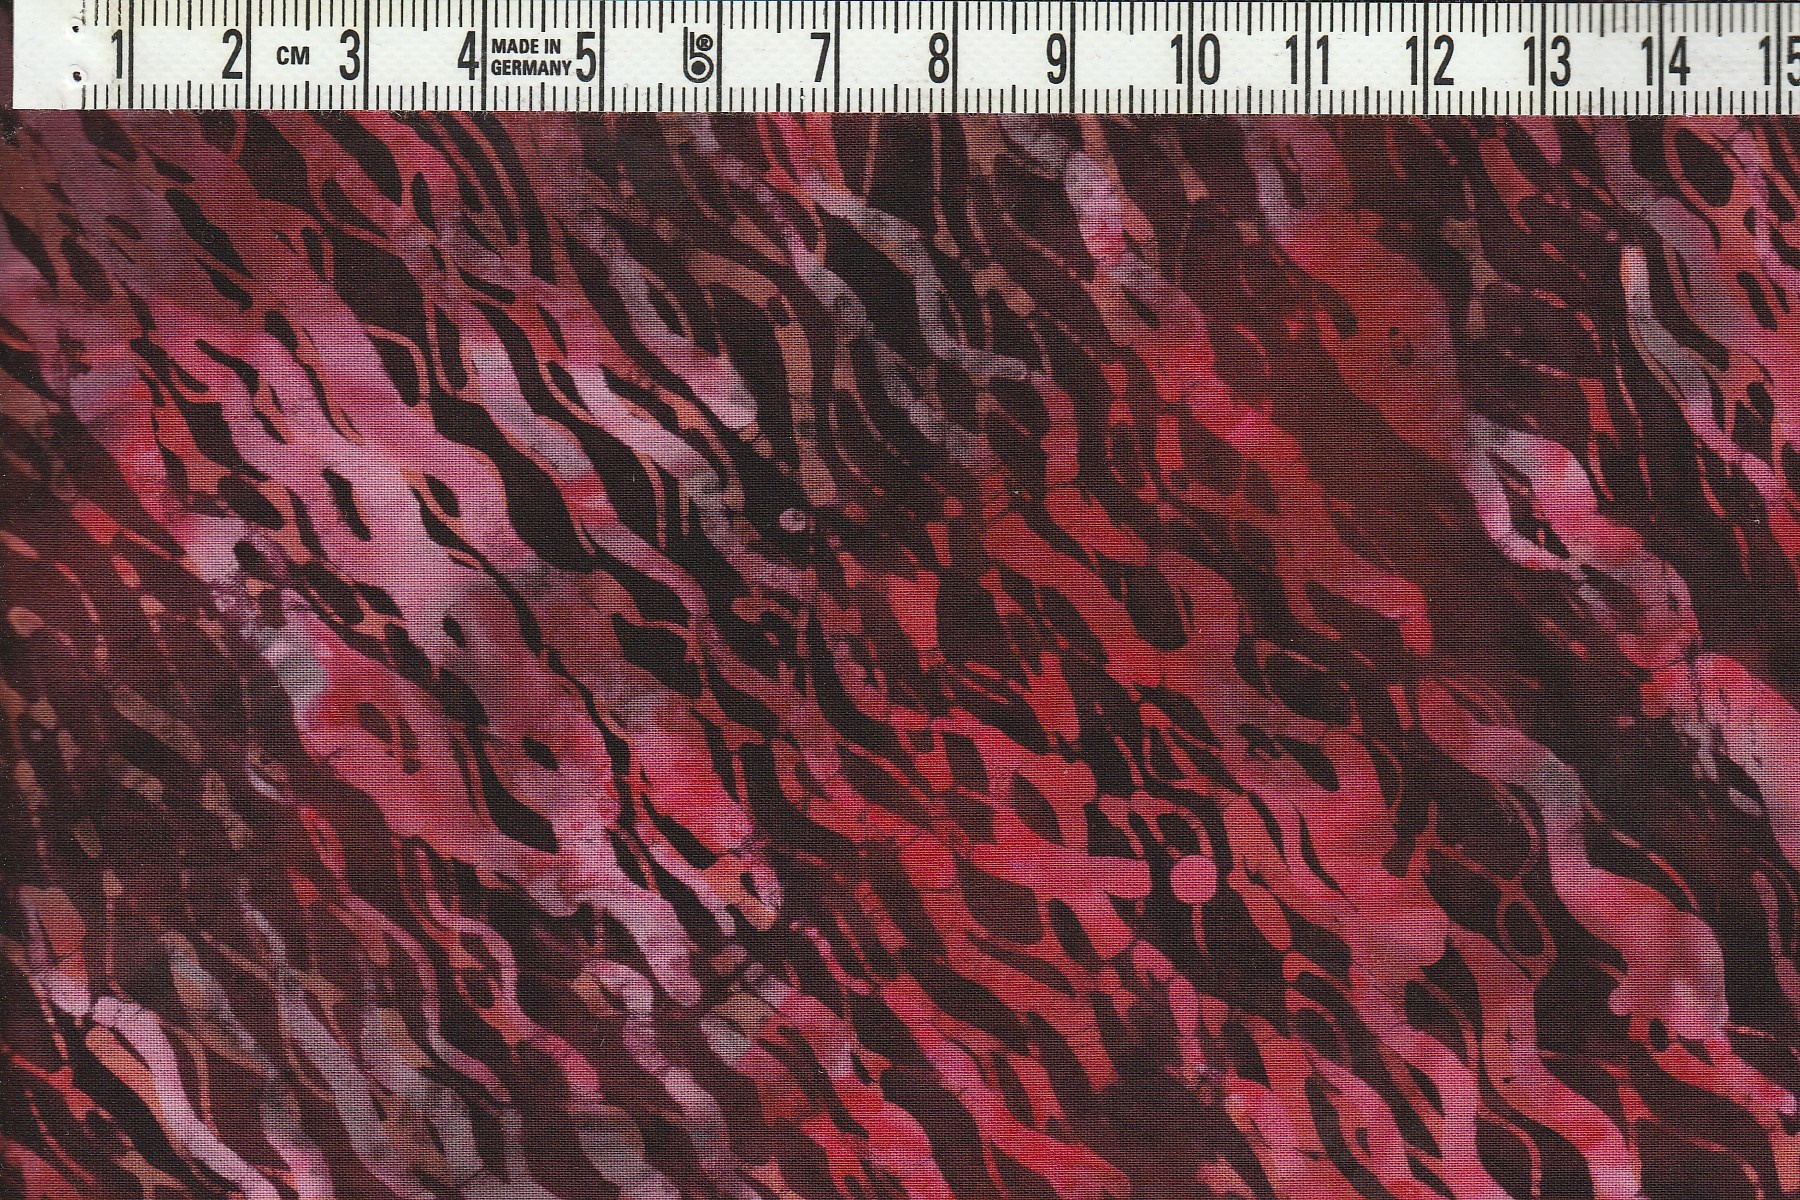 Diagonalmönstrat med mäktiga röda, rosa och svarta färger